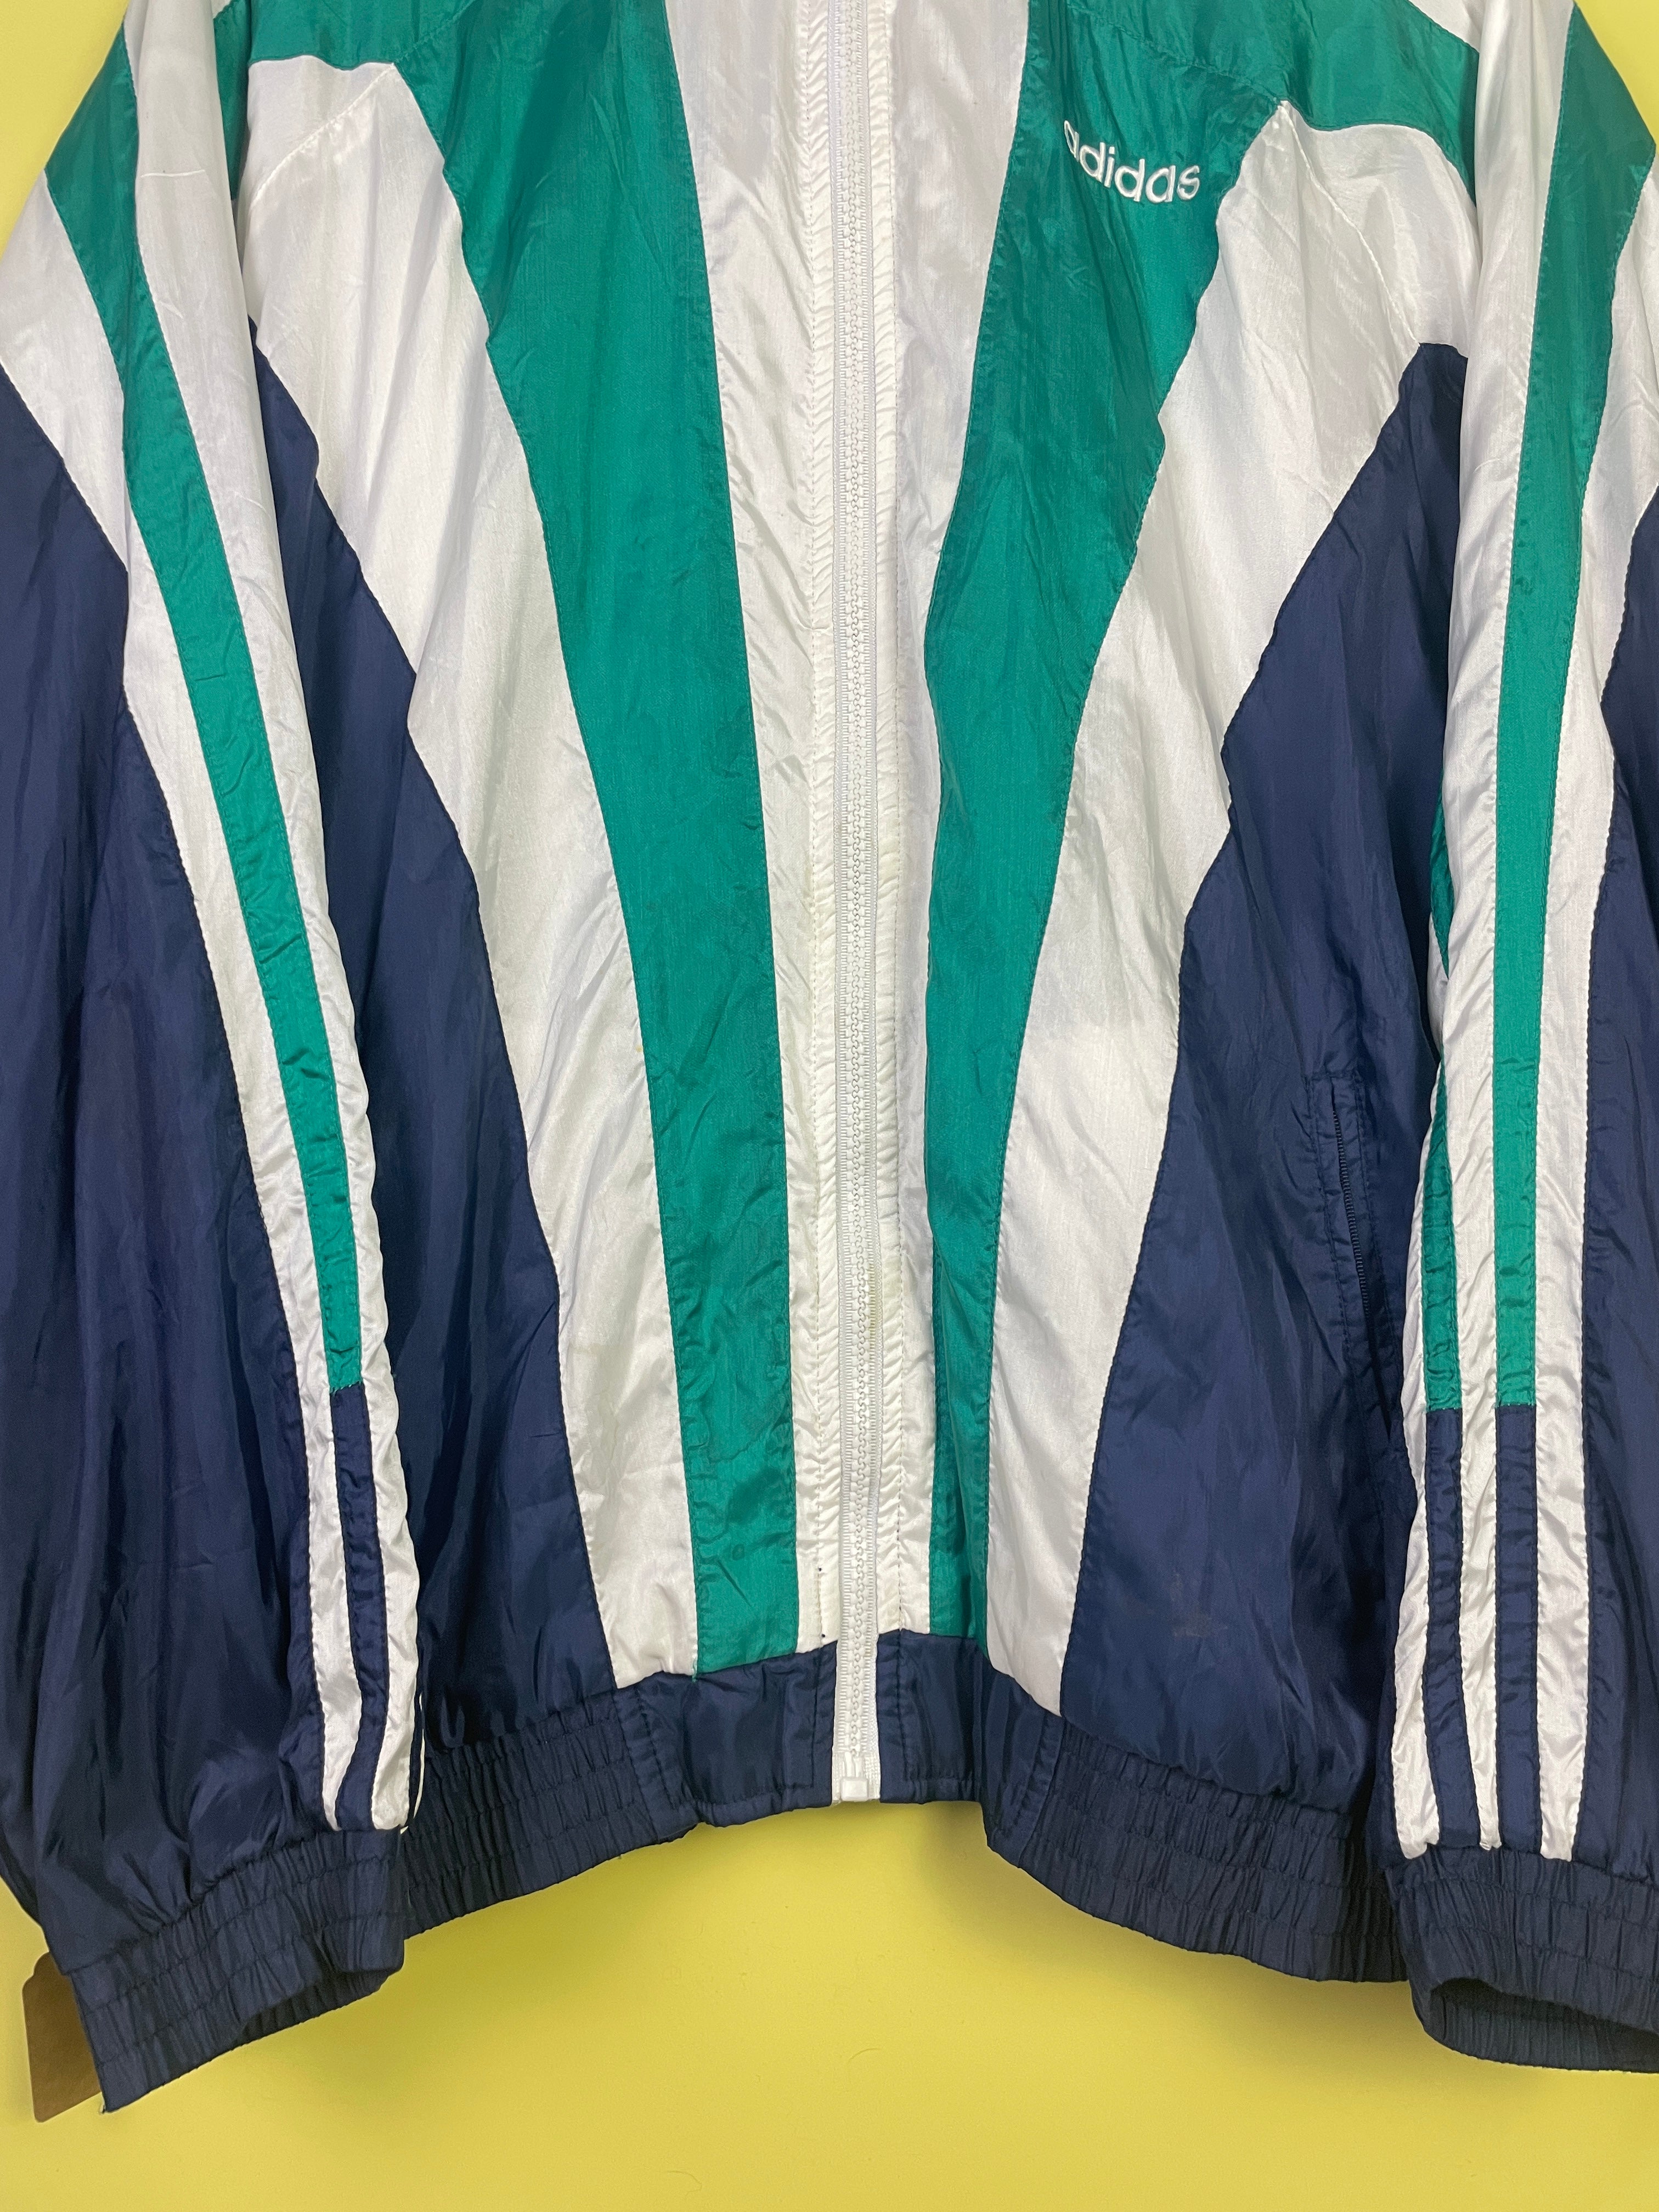 L unisex Adidas Vintage Track Jacket